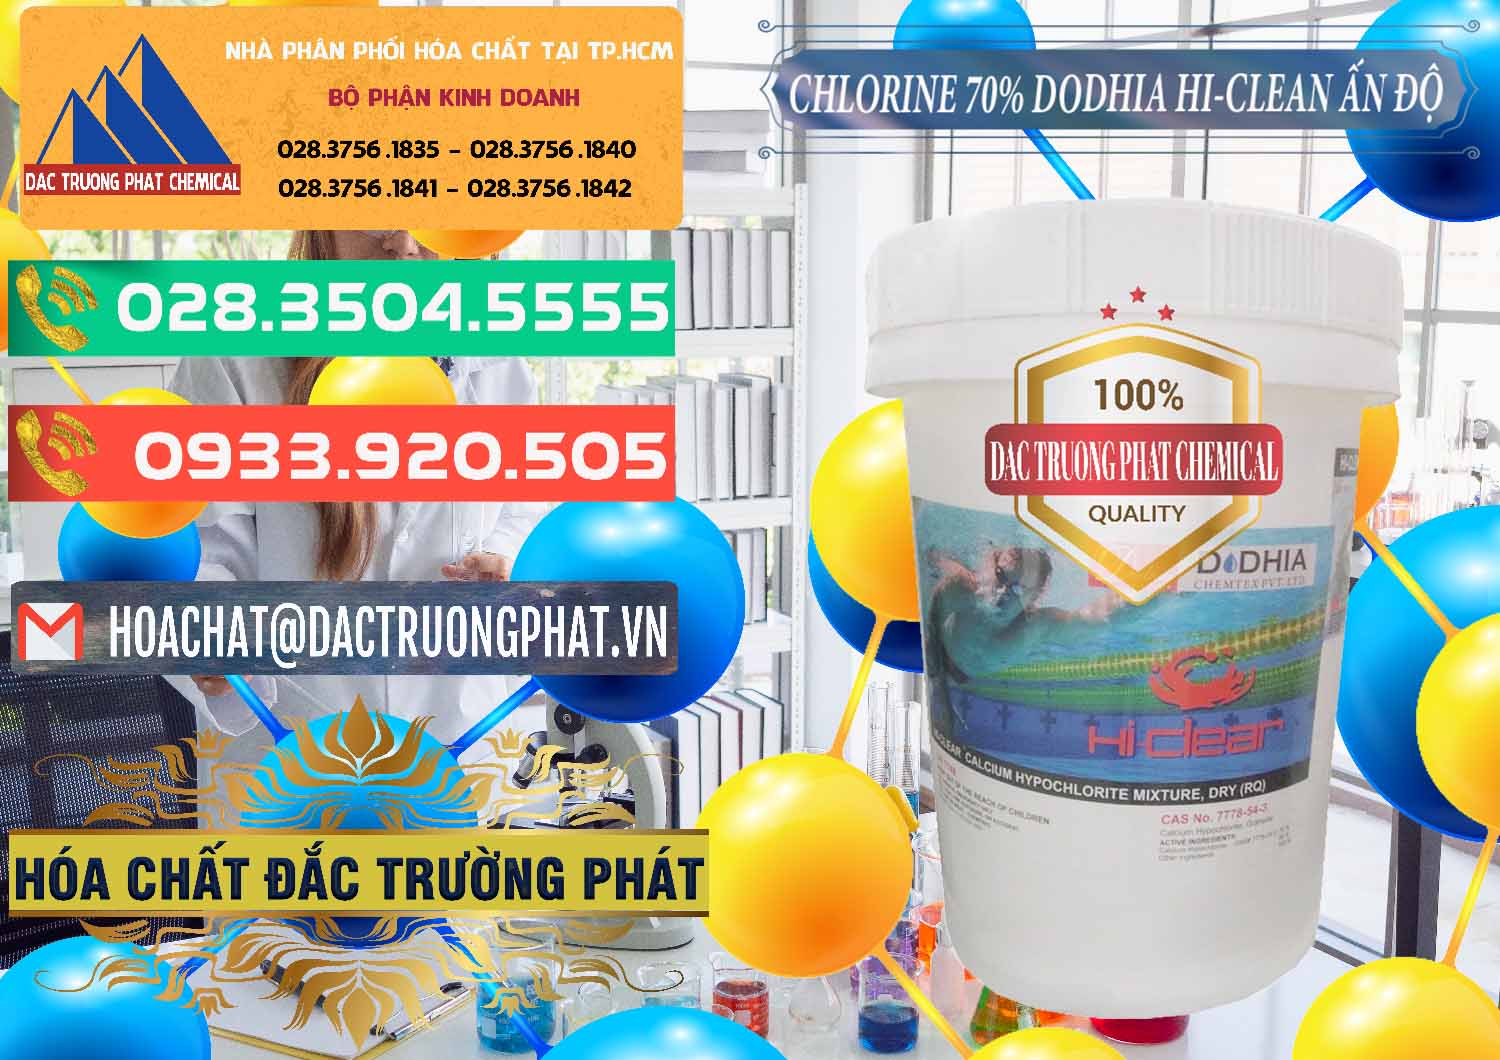 Cty chuyên cung cấp _ bán Chlorine – Clorin 70% Dodhia Hi-Clean Ấn Độ India - 0214 - Cty bán ( cung cấp ) hóa chất tại TP.HCM - congtyhoachat.com.vn